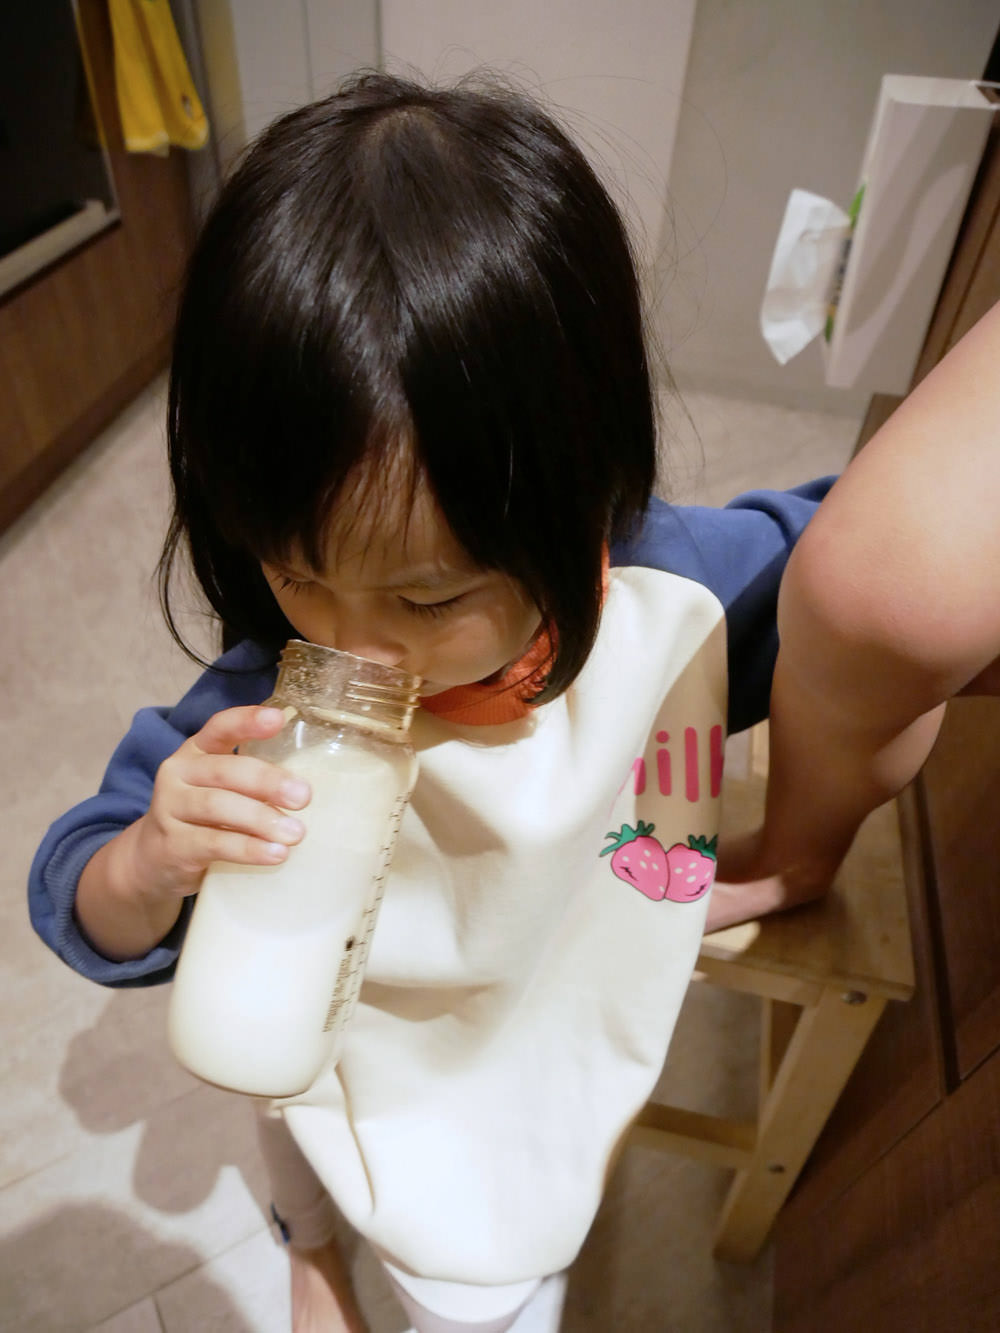 [懶人包] 一歲換奶方法! 配方奶如何幫助銜接母乳保護力? 把握小孩成長黃金期 打造健康好體質!-豐力富幼兒成長奶粉